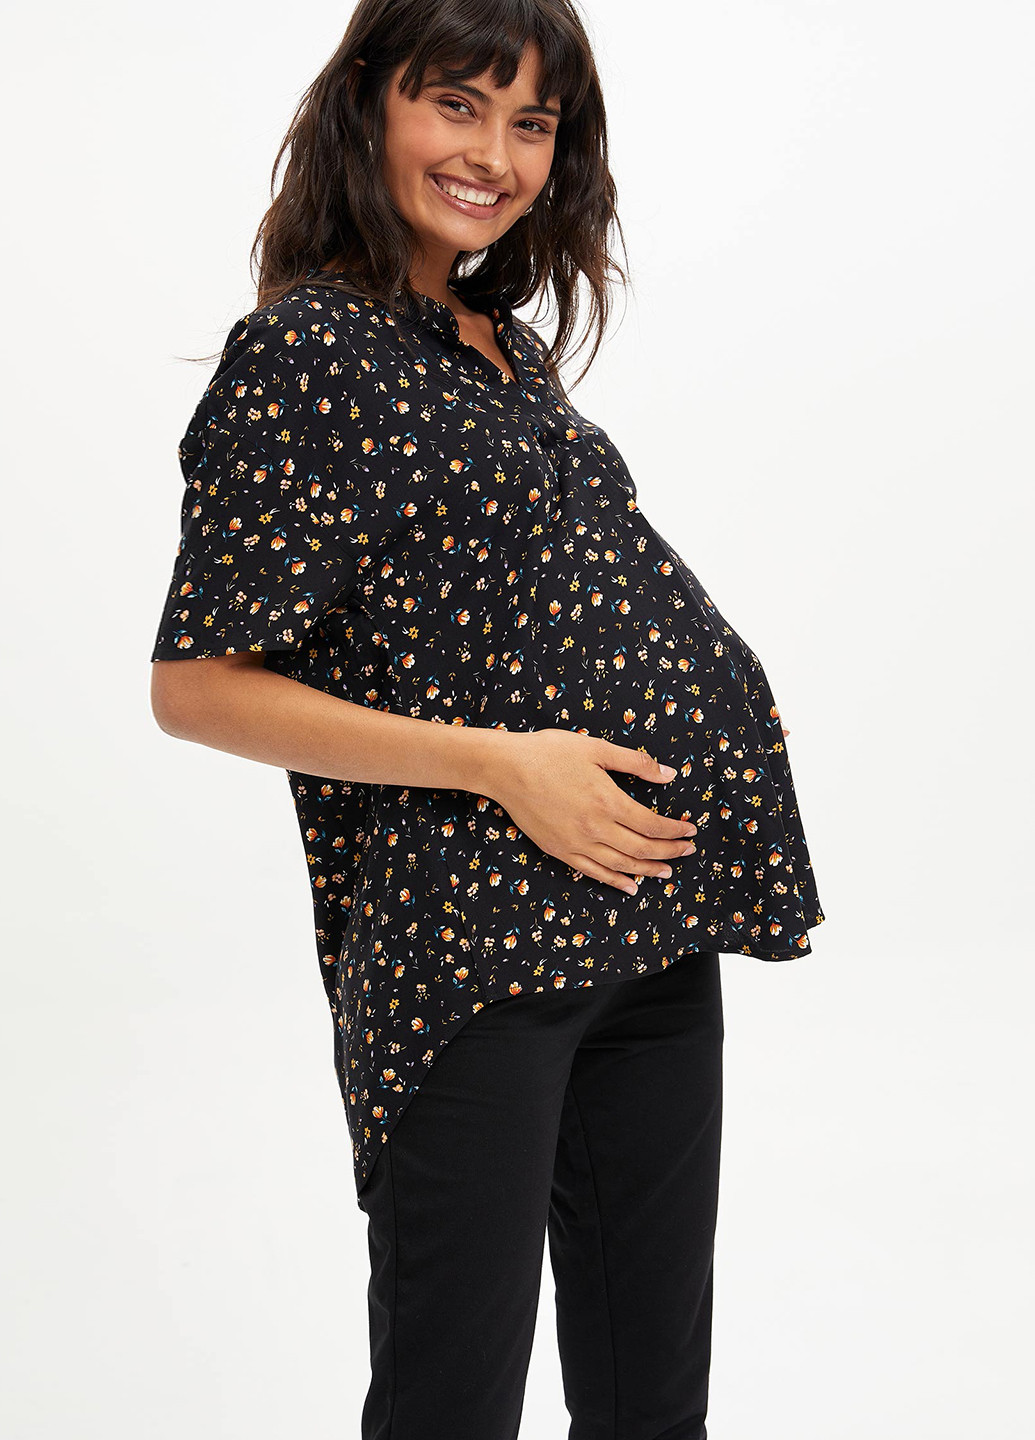 Чёрная блуза для беременных DeFacto